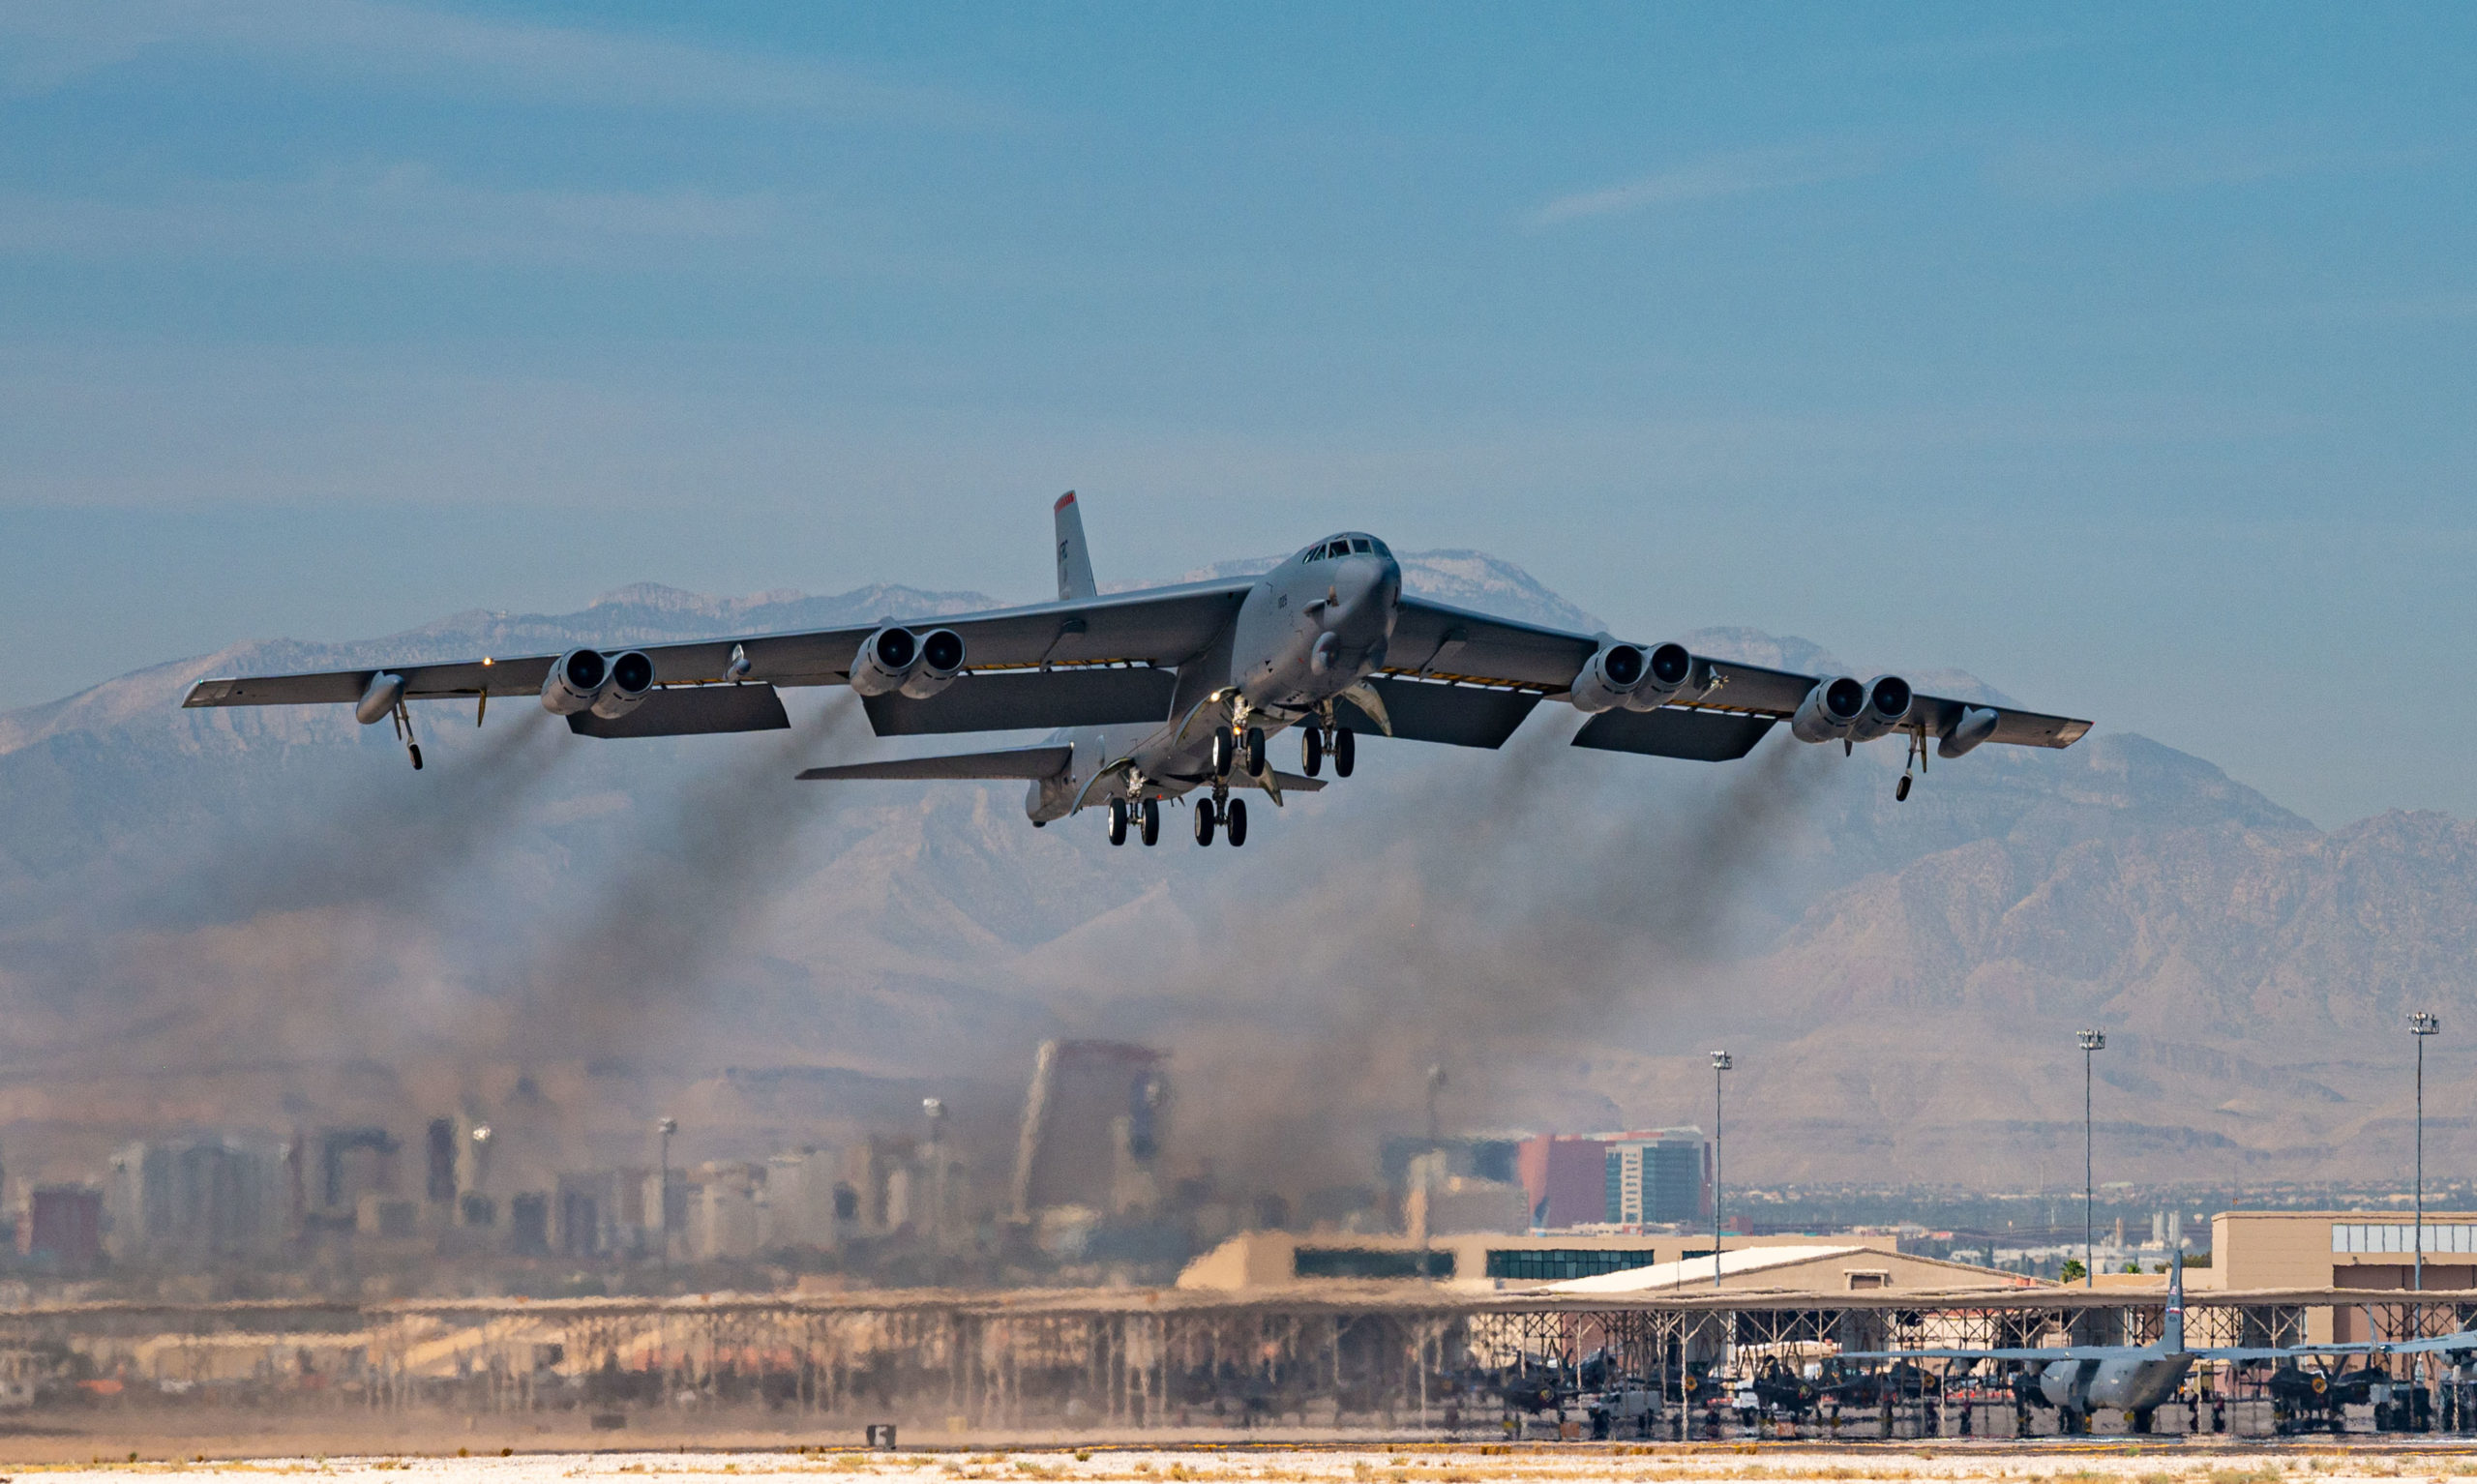 Boeing і Rolls-Royce випробували модель ядерного бомбардувальника B-52 Stratofortress із новими двигунами F130